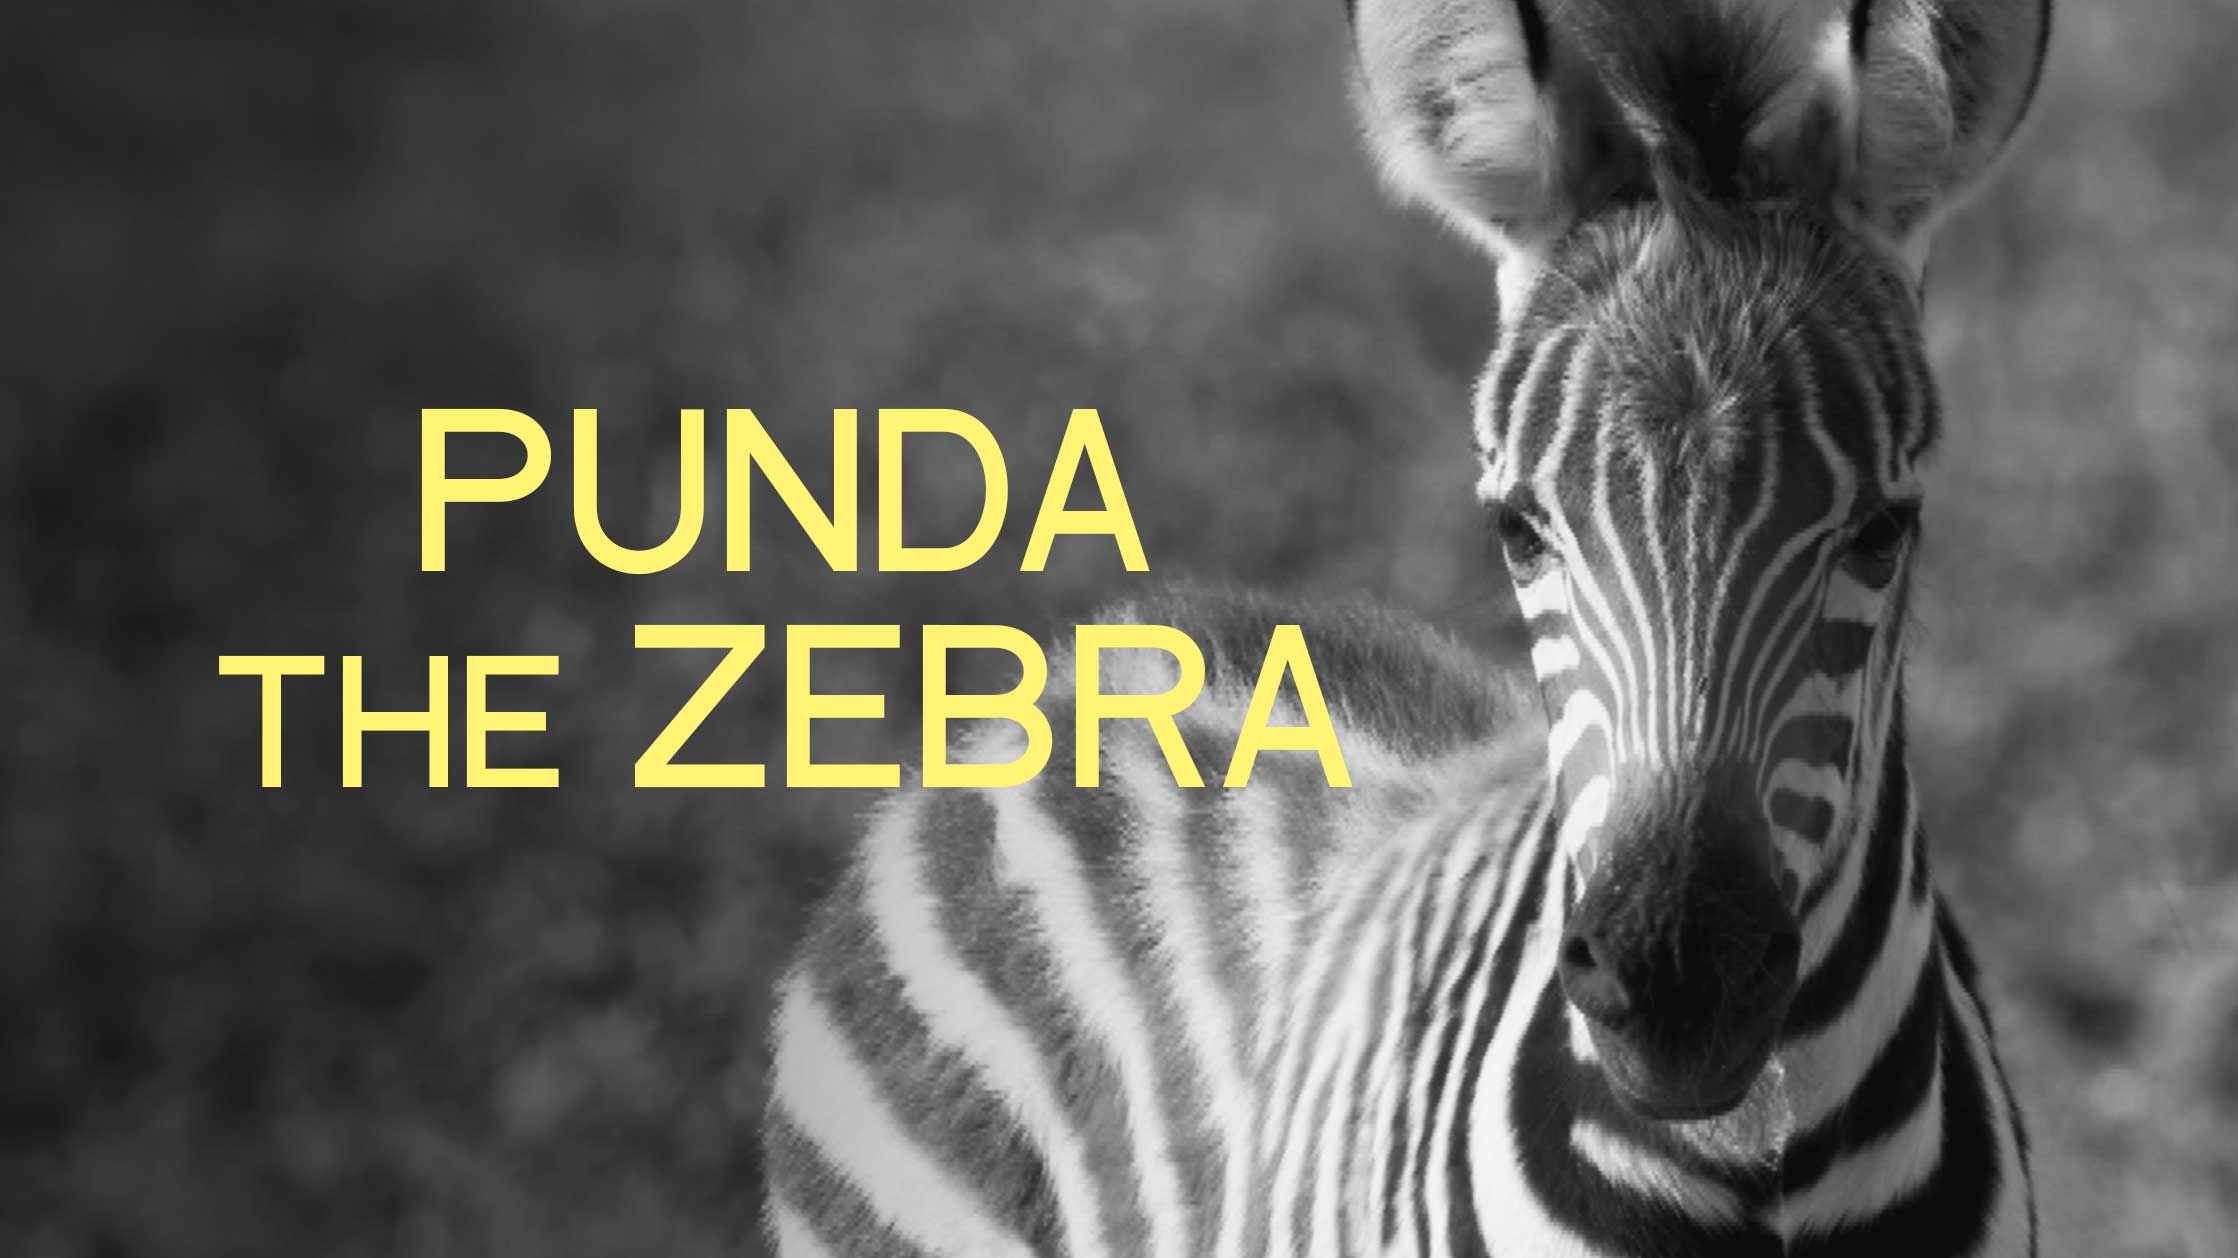 Punda The Zebra: Survival in the wild